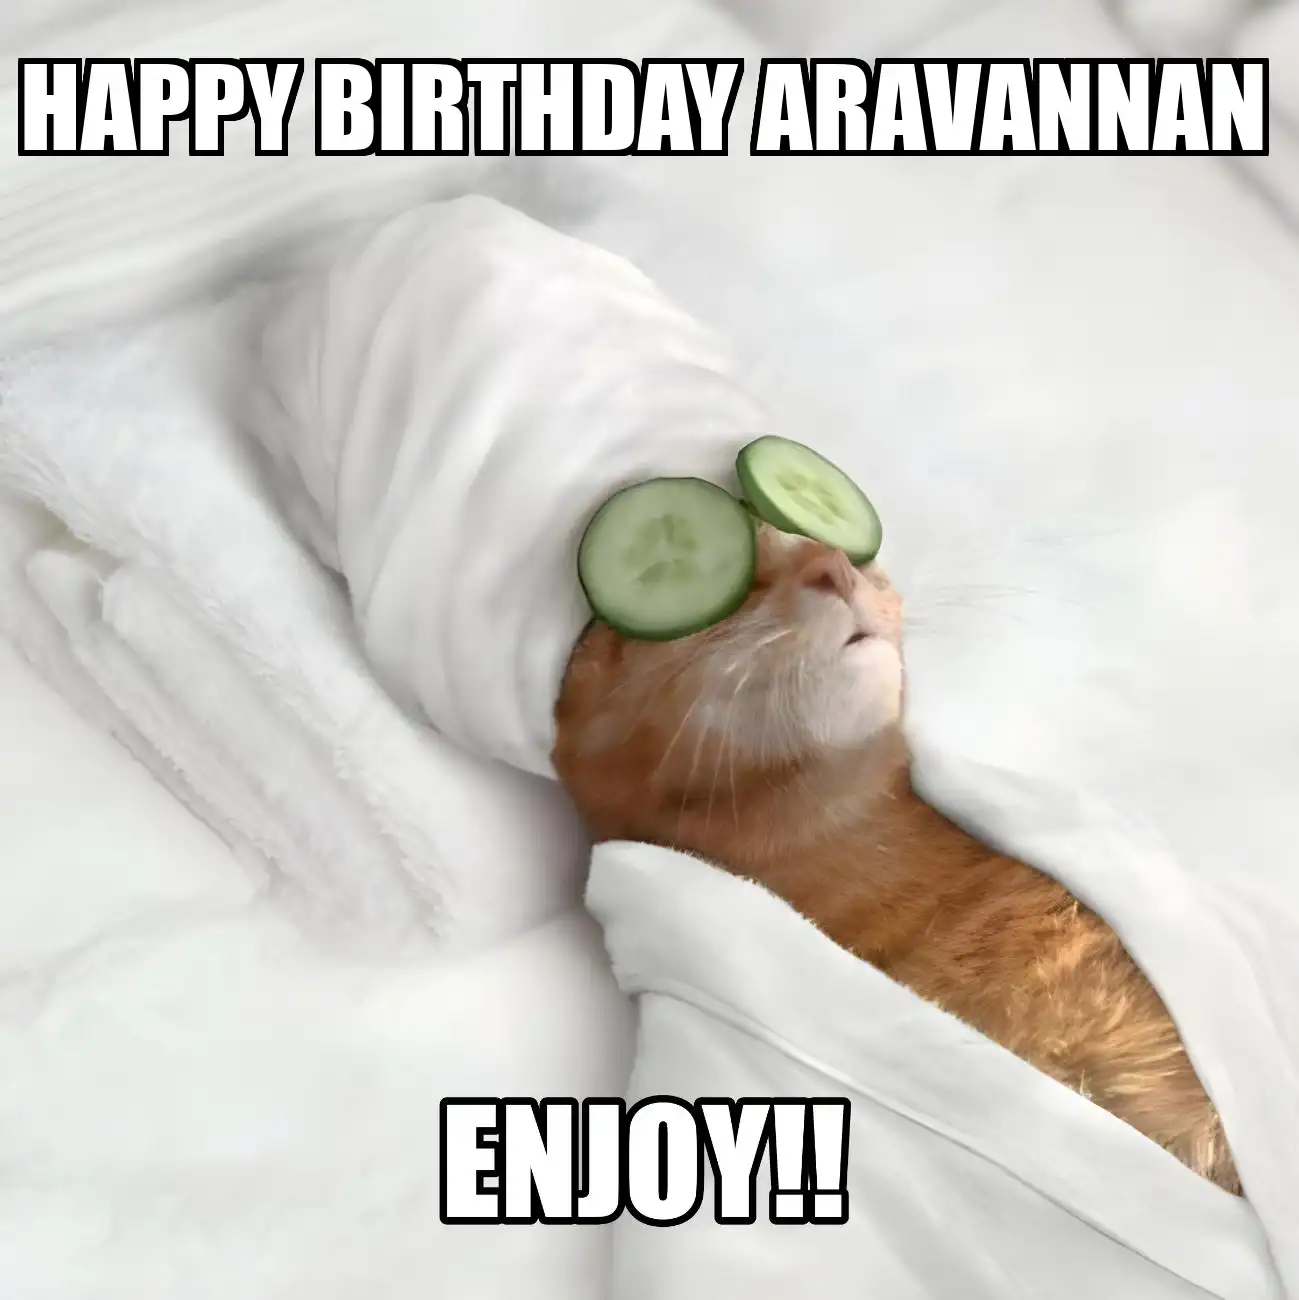 Happy Birthday Aravannan Enjoy Cat Meme